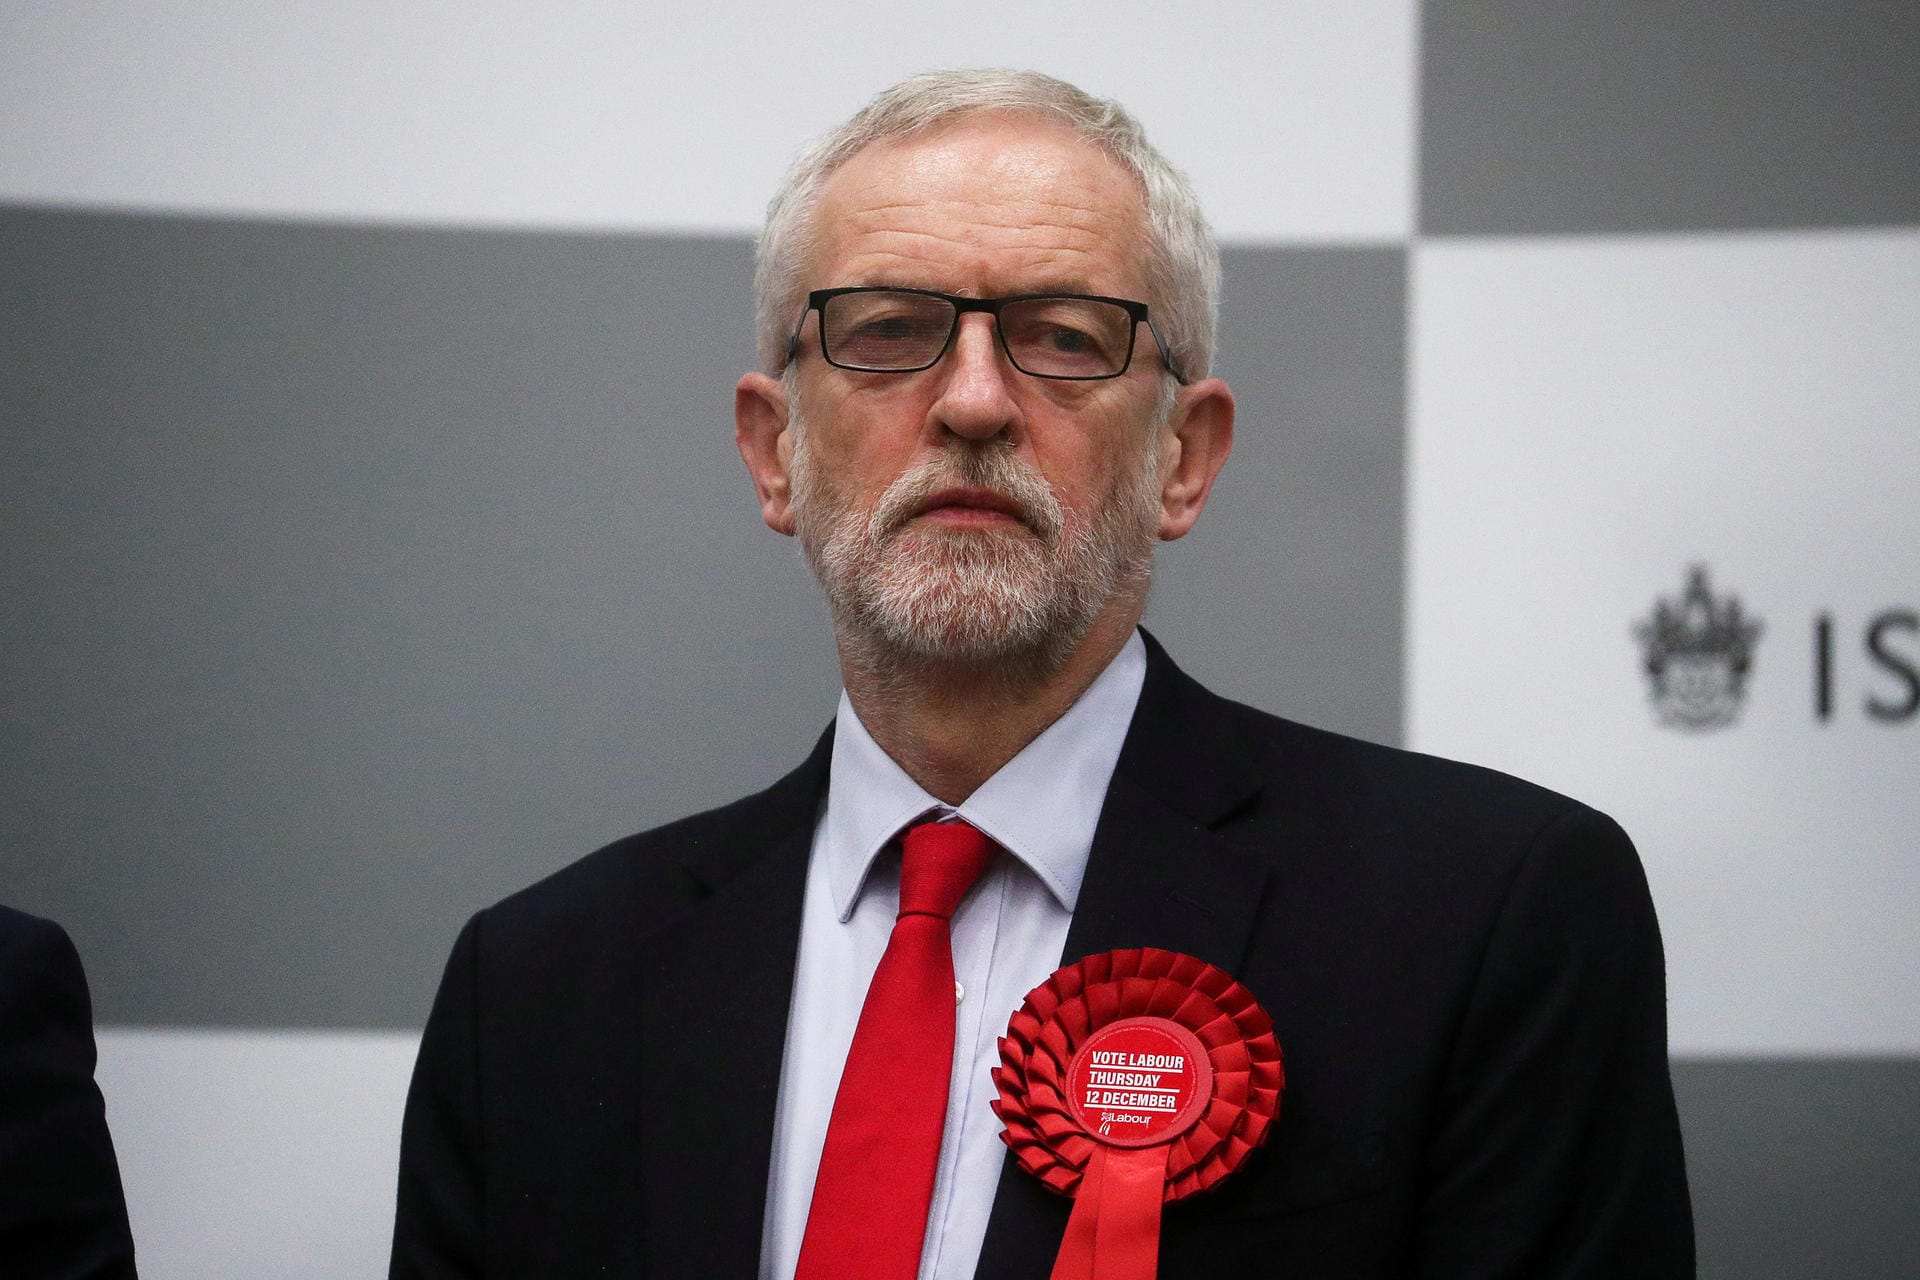 Johnsons Konkurrent Jeremy Corbyn erlebt dagegen eine historische Wahlpleite. Labour verliert 59 Abgeordnetensitze im Parlament. Corbyn kündigt seinen Rücktritt an, will aber, bis ein Nachfolger gefunden ist, im Amt bleiben.